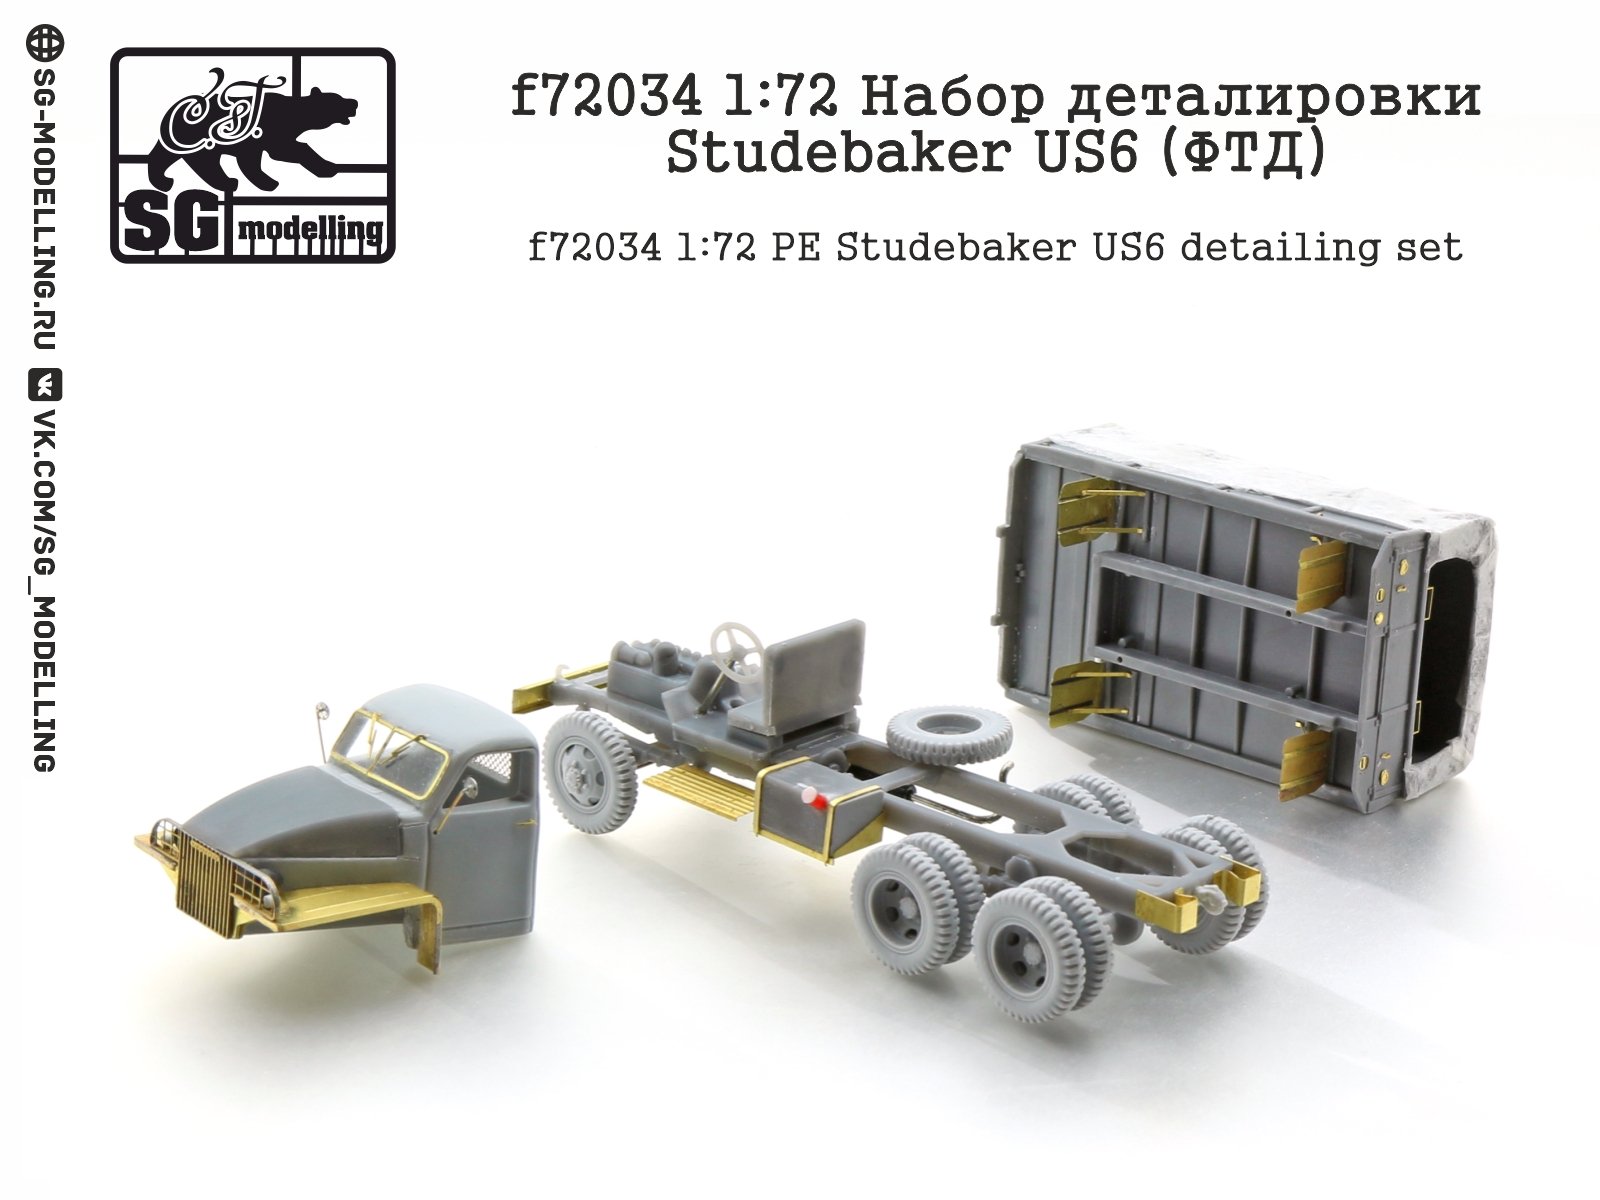 F72034 1:72 Details Studebaker US6 (FTD) - imodeller.store